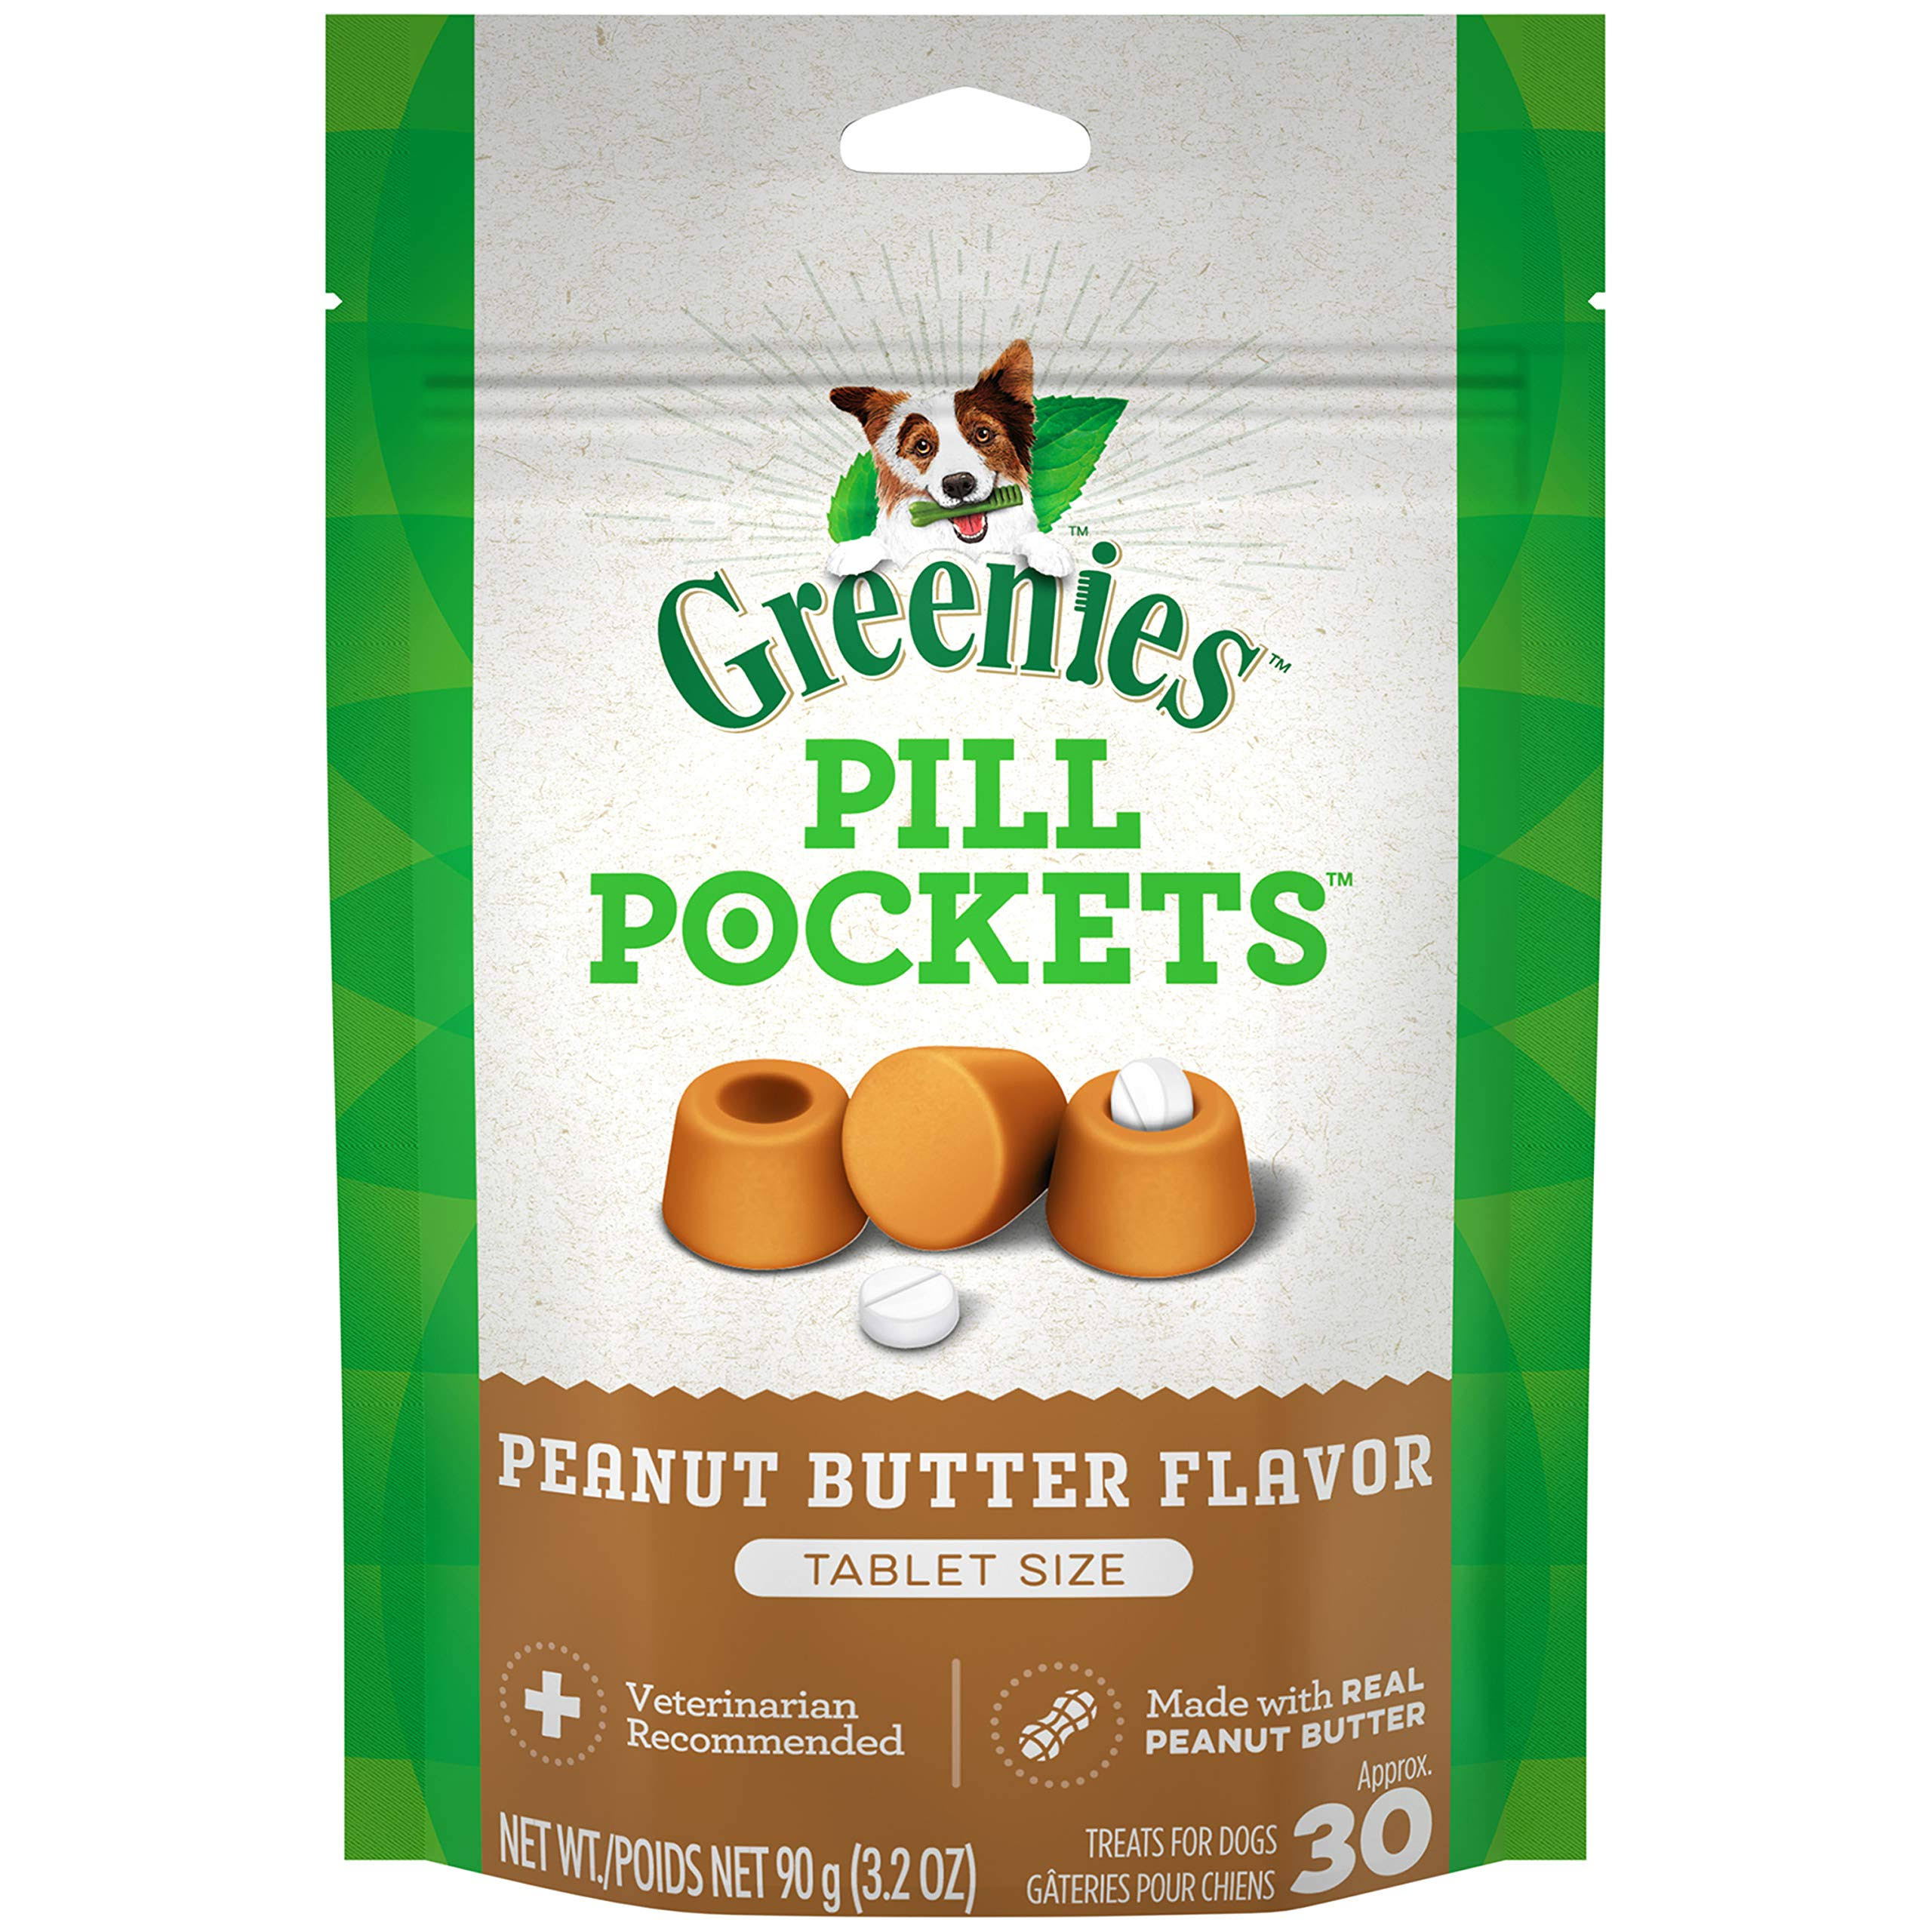 Greenies Pill Pockets Tablet Dog Treats - Peanut Butter, 3.2oz